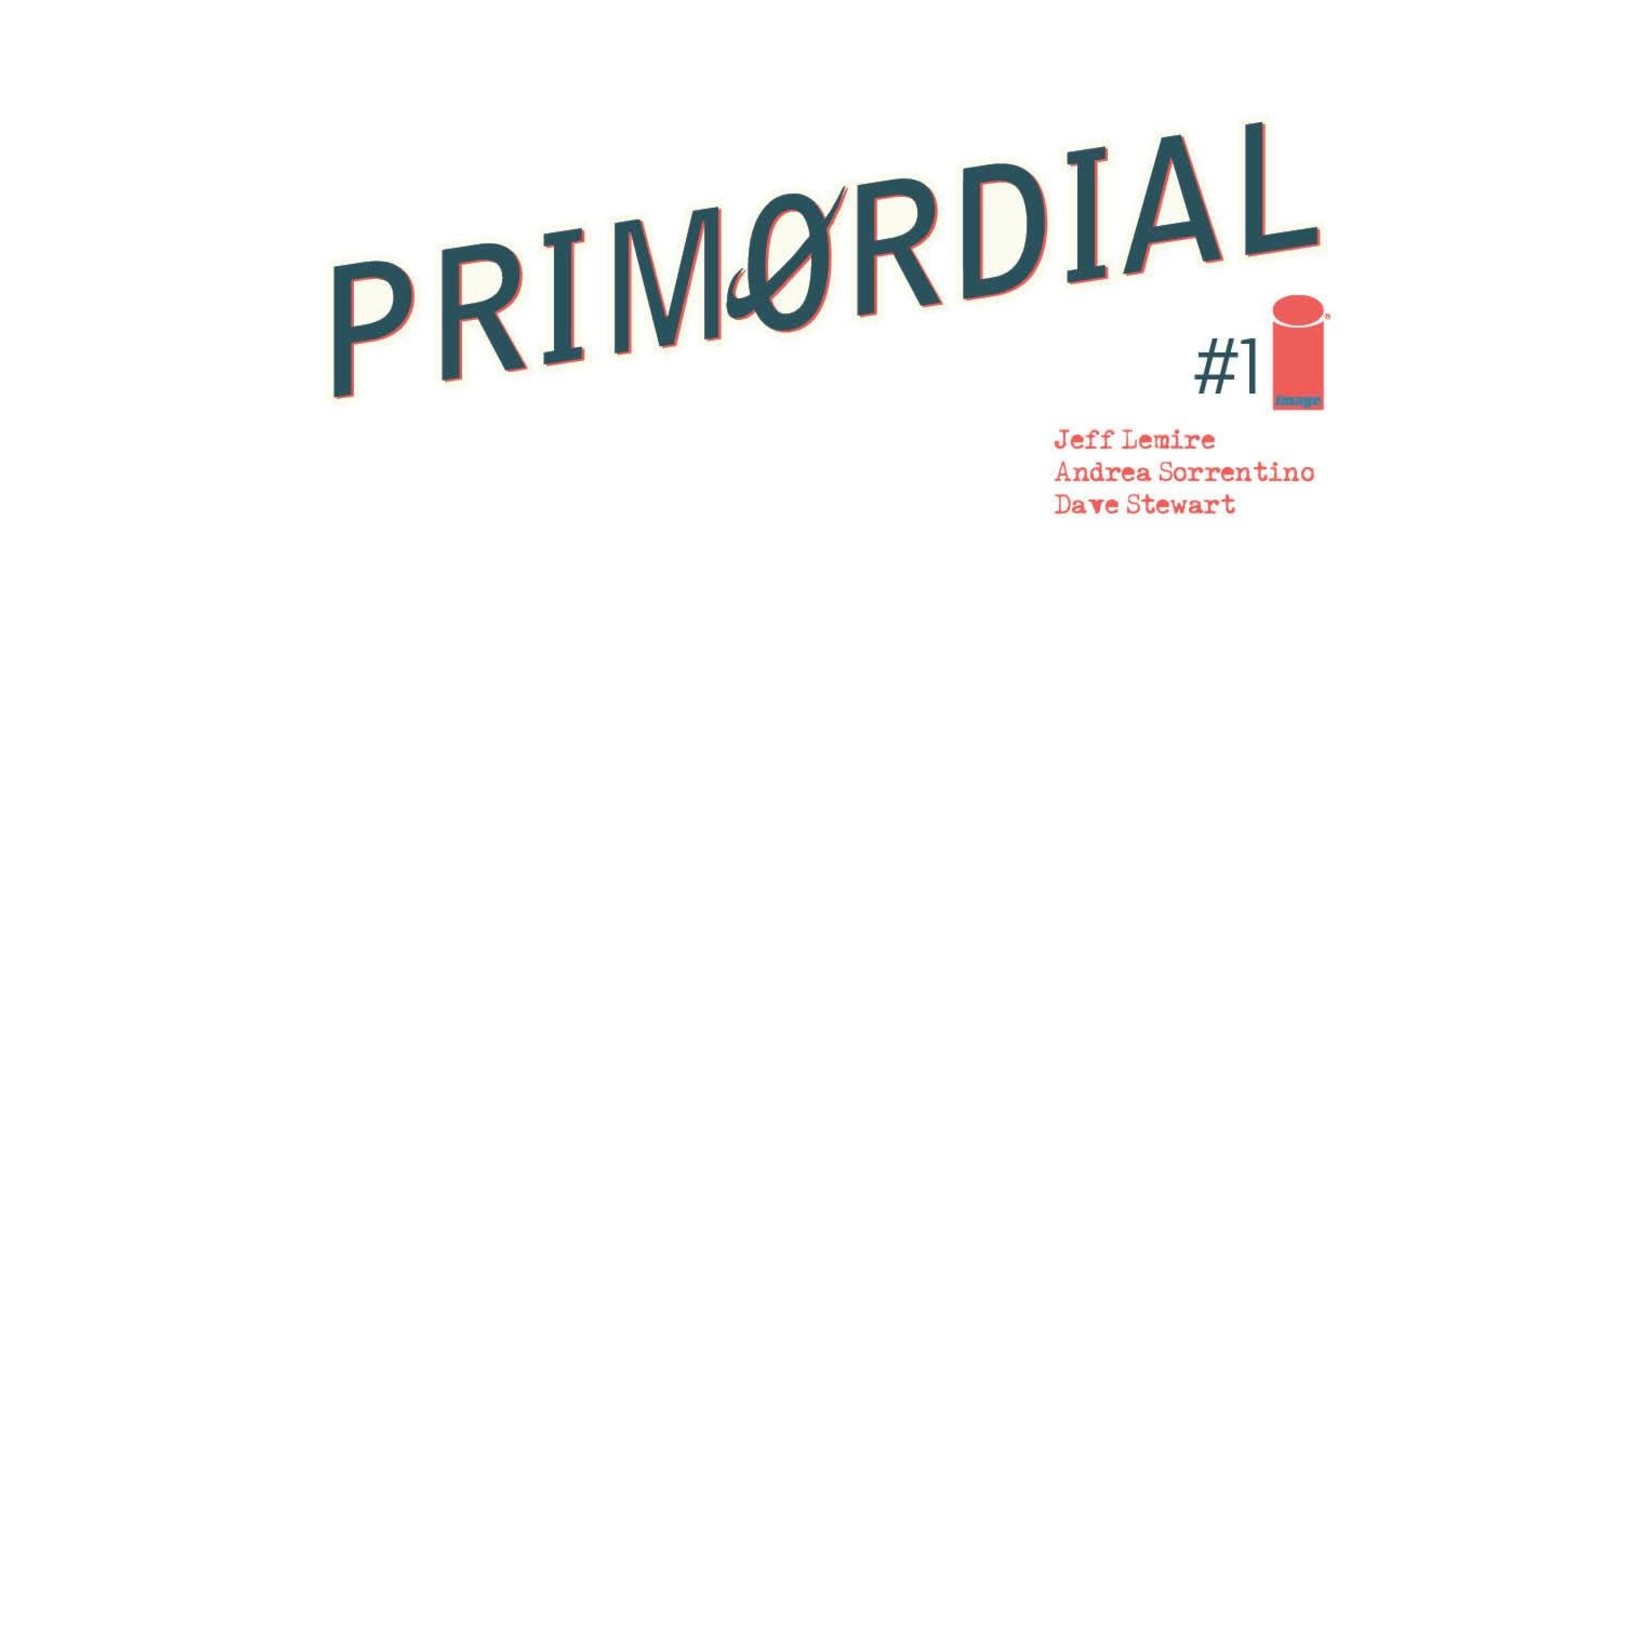 Primordial #1 E